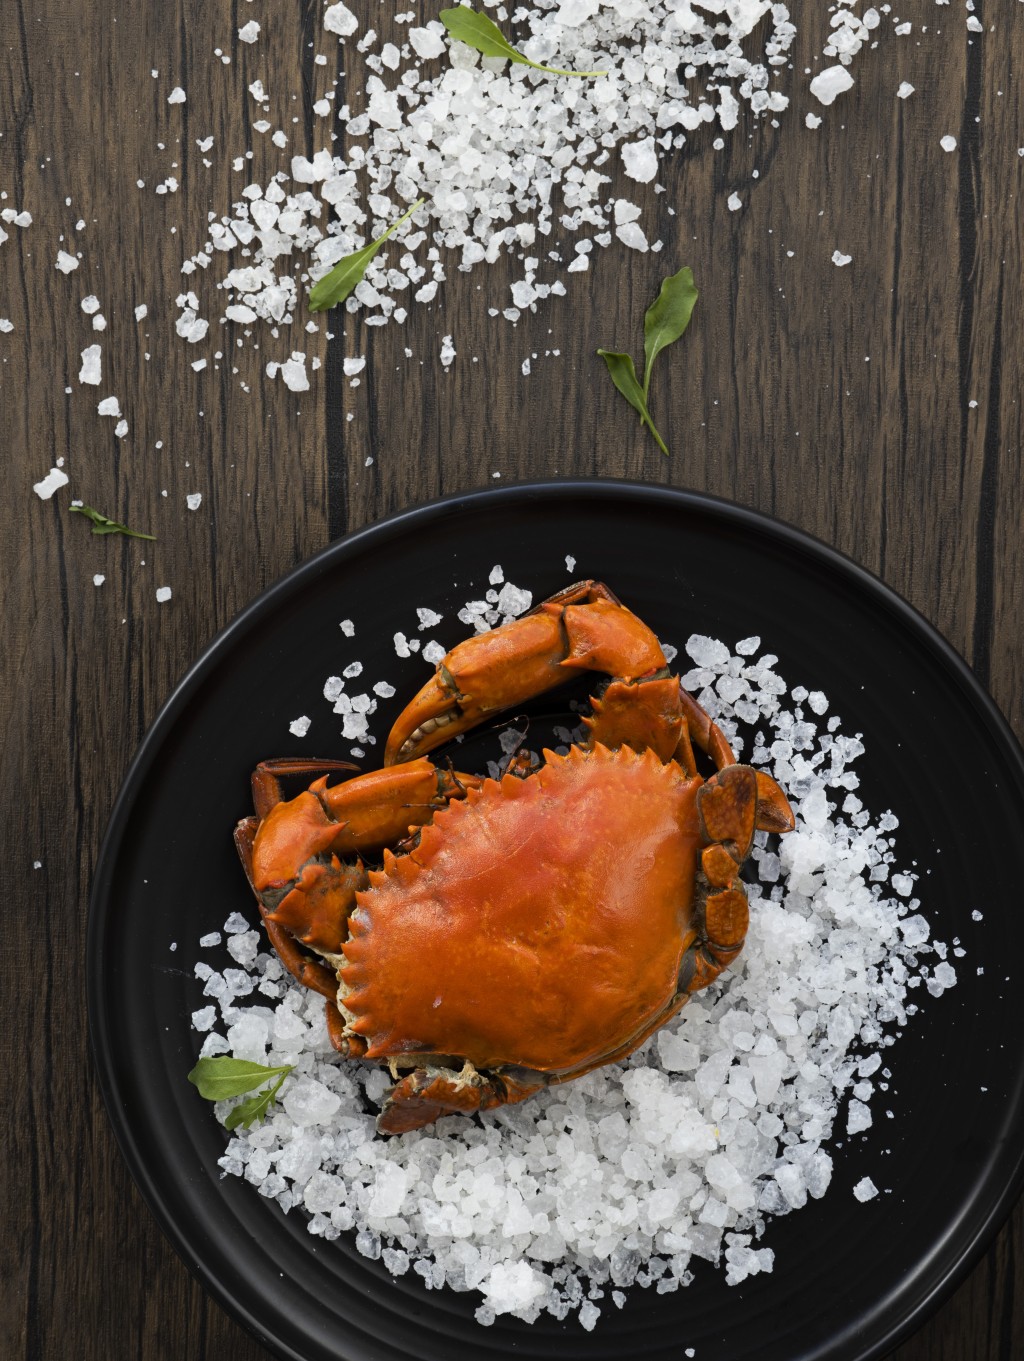 古法鹽瓦焗大肉蟹精選 1.5斤大肉蟹（兩位用），蟹身肉厚，啖啖鮮甜。